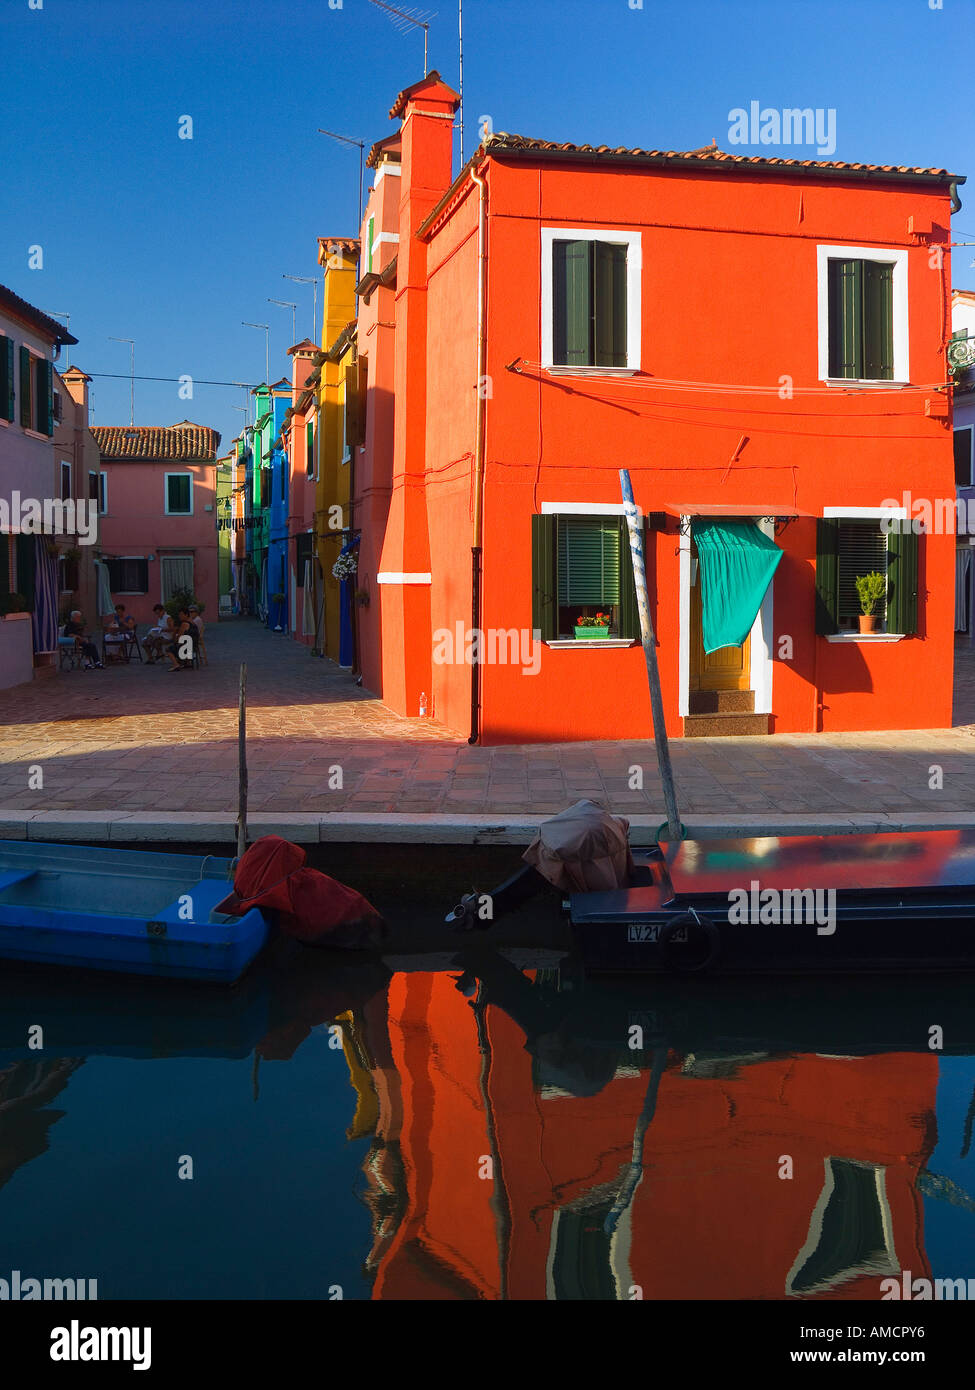 Houses and Boats, Burano Island, Venetian Lagoon, Italy Stock Photo